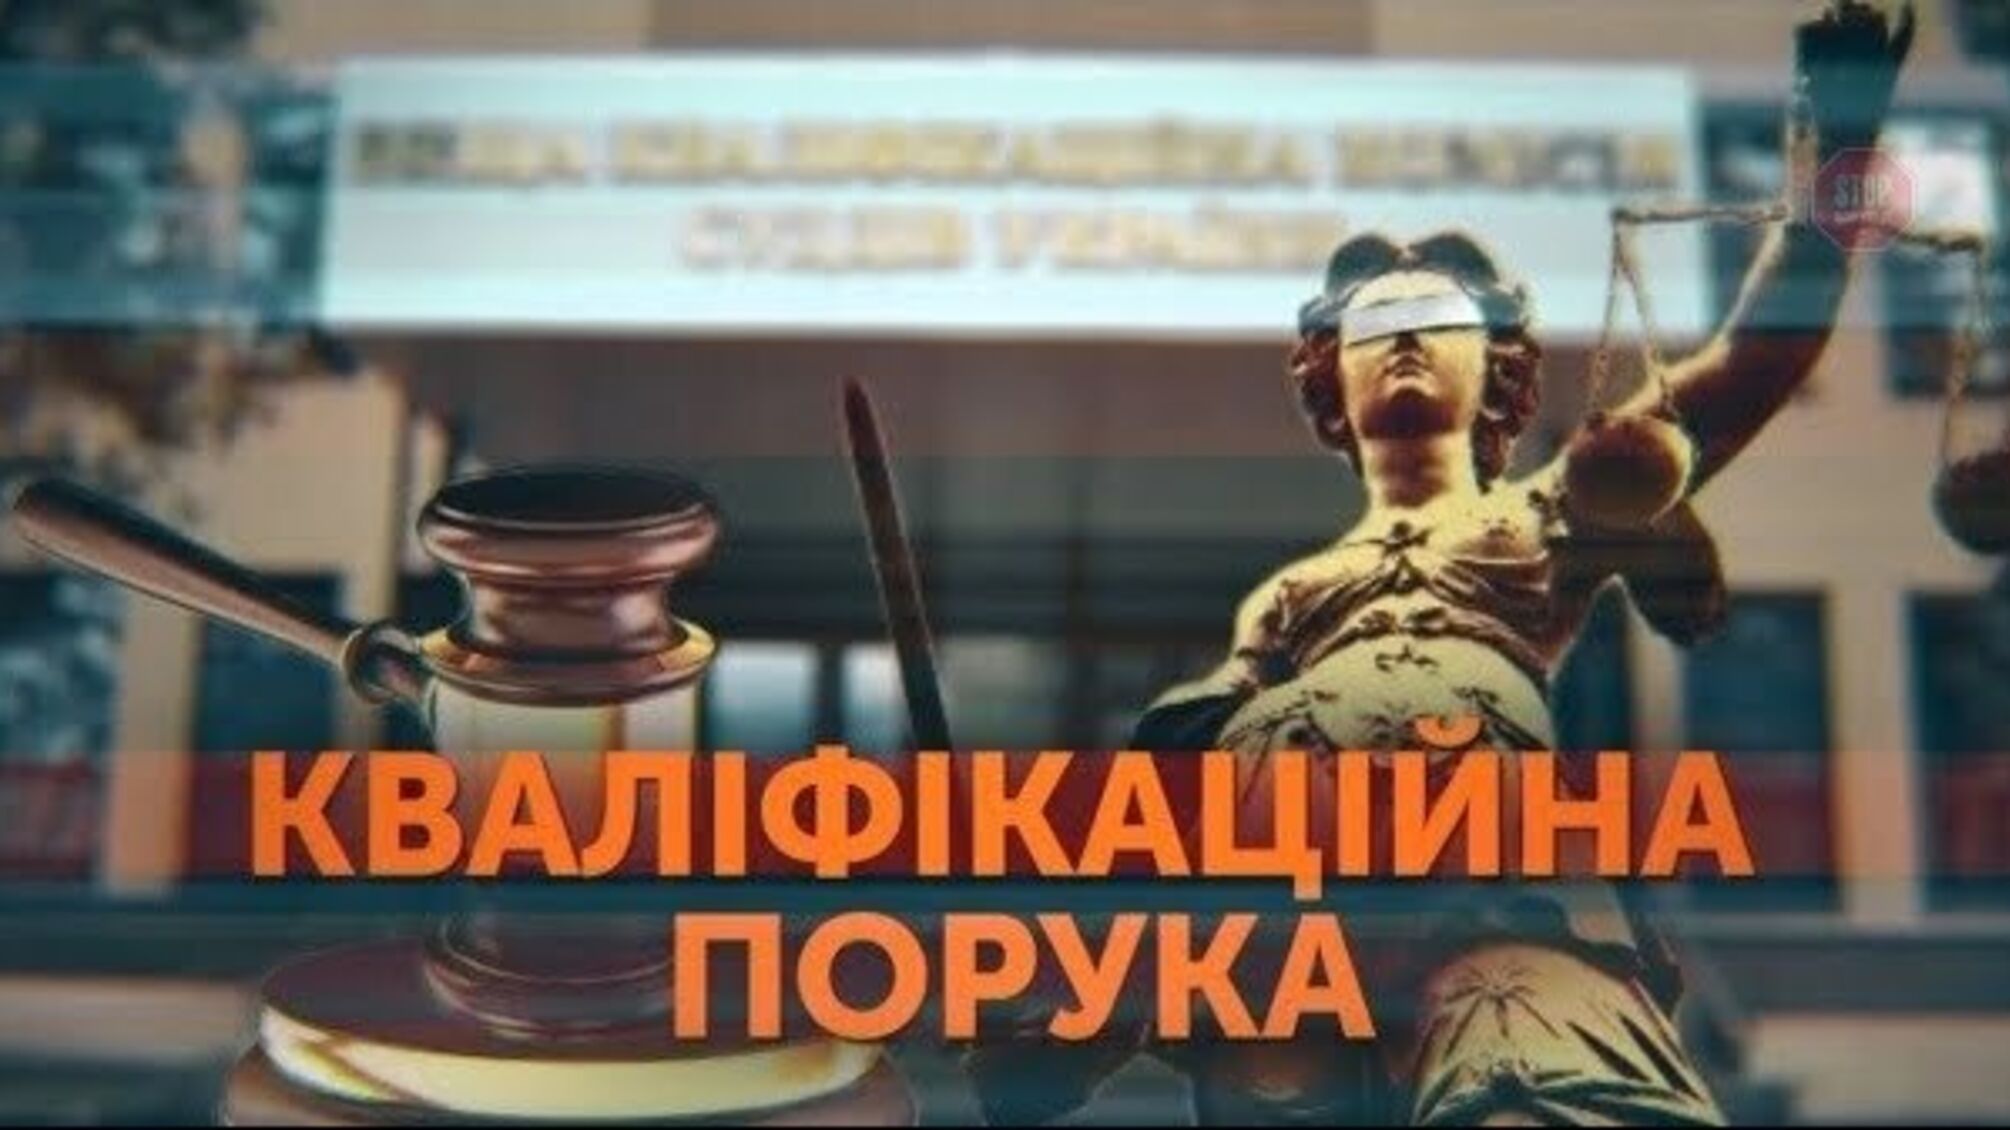 З миру по нитці, Чванкіну – на мантію: кваліфікаційна комісія закрила очі на сумнівне майно одеського судді